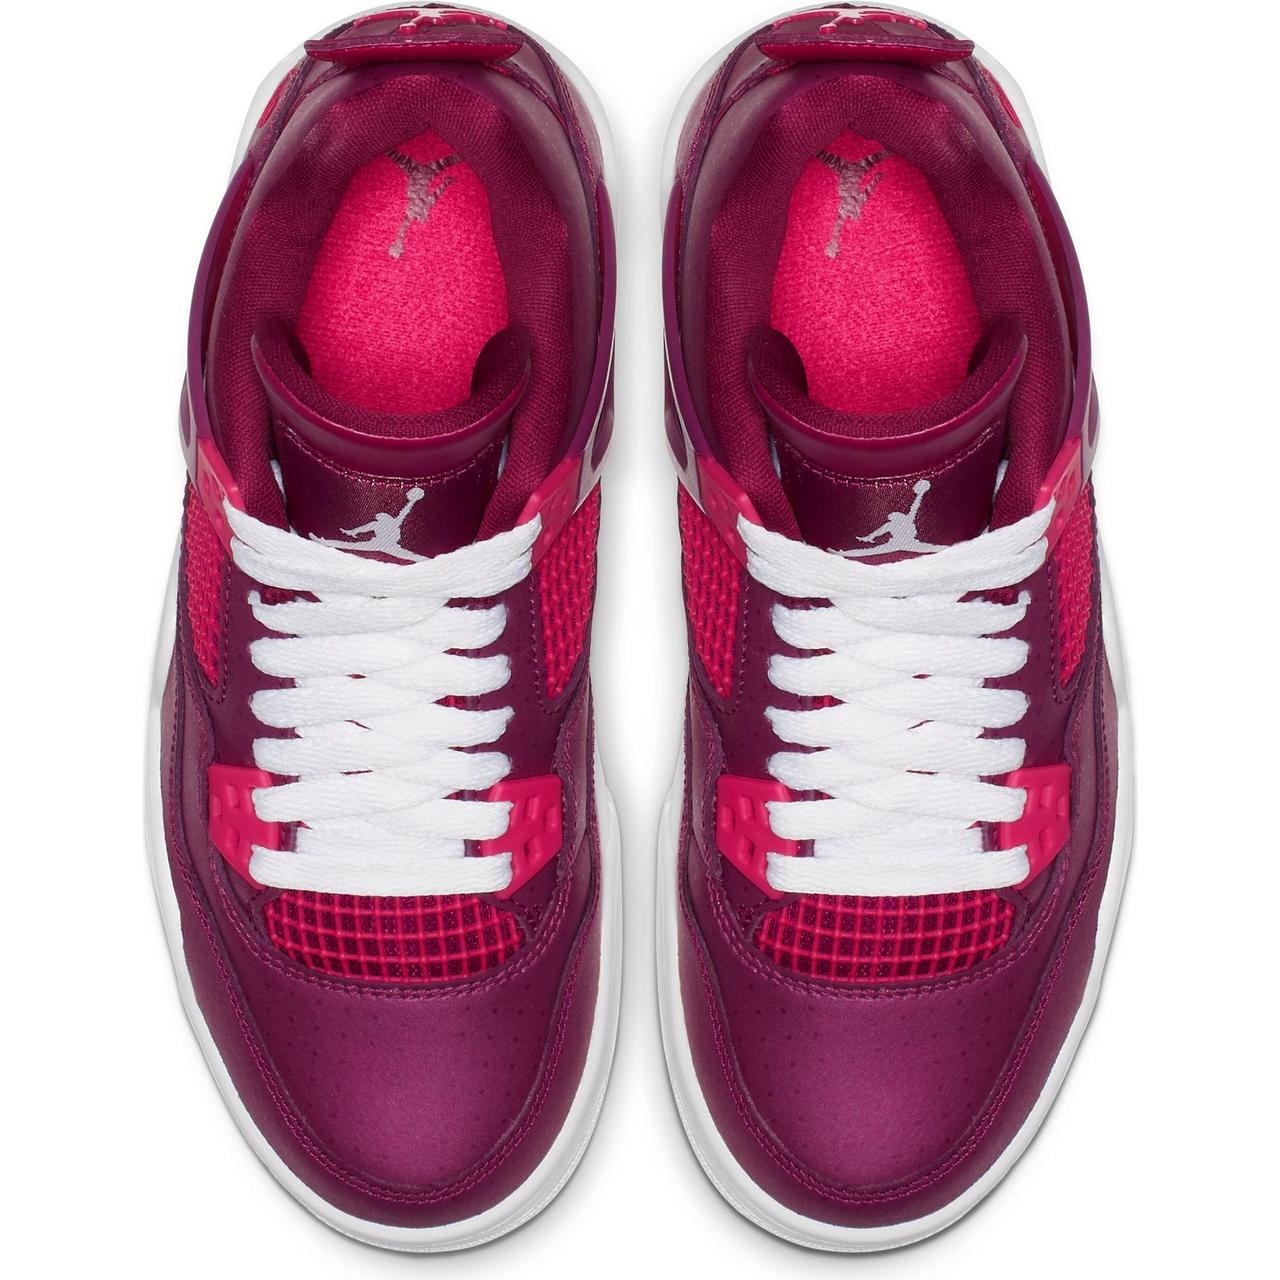 Sneaker Release: Jordan Retro 4 “True Berry” Girls Basketball Shoe